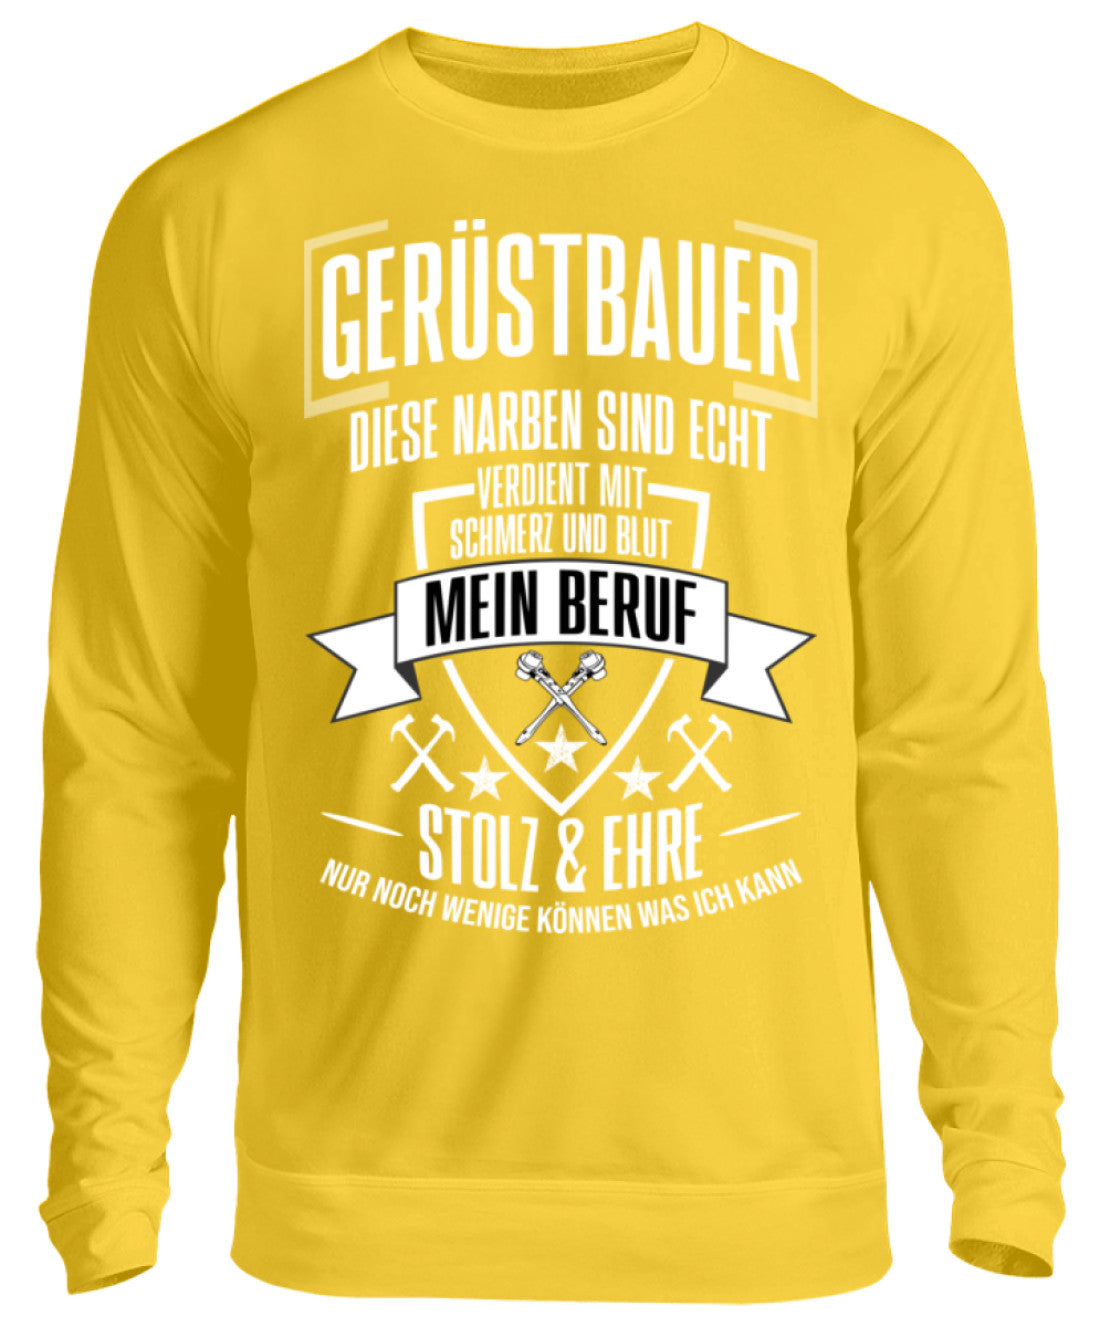 Gerüstbauer / MEIN BERUF  - Unisex Pullover €32.95 Gerüstbauer - Shop >>